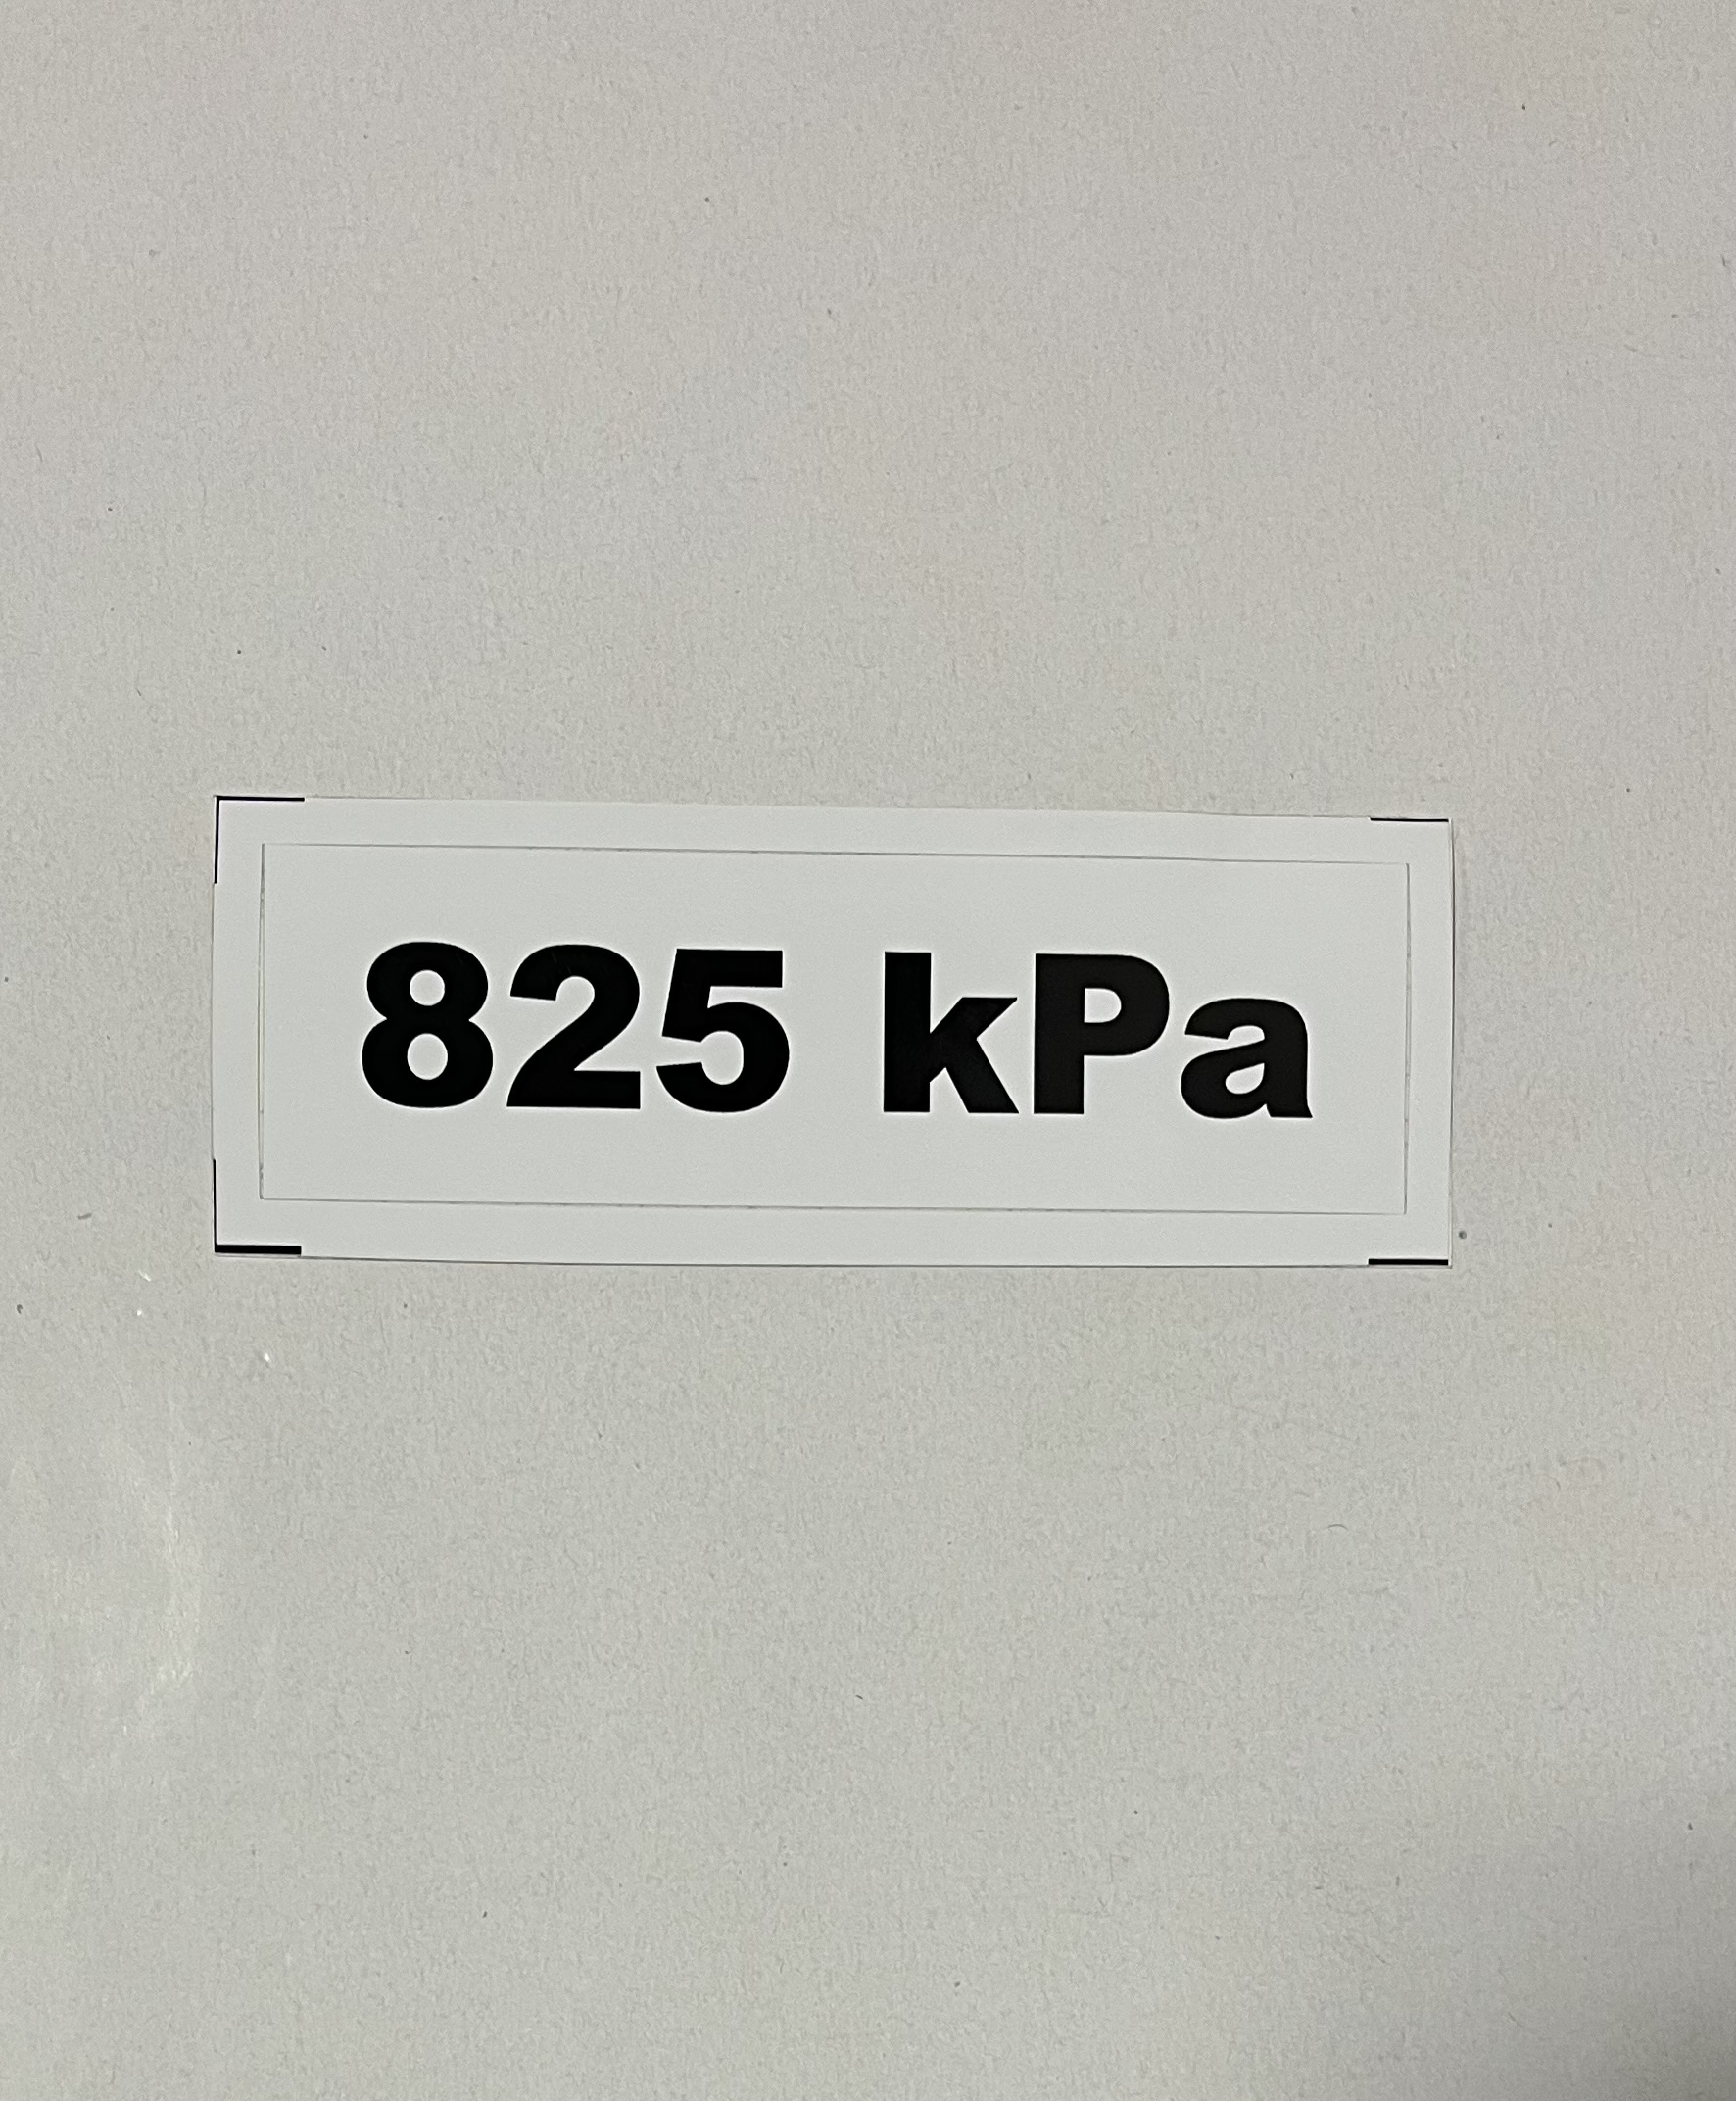 Označenie kPa 825